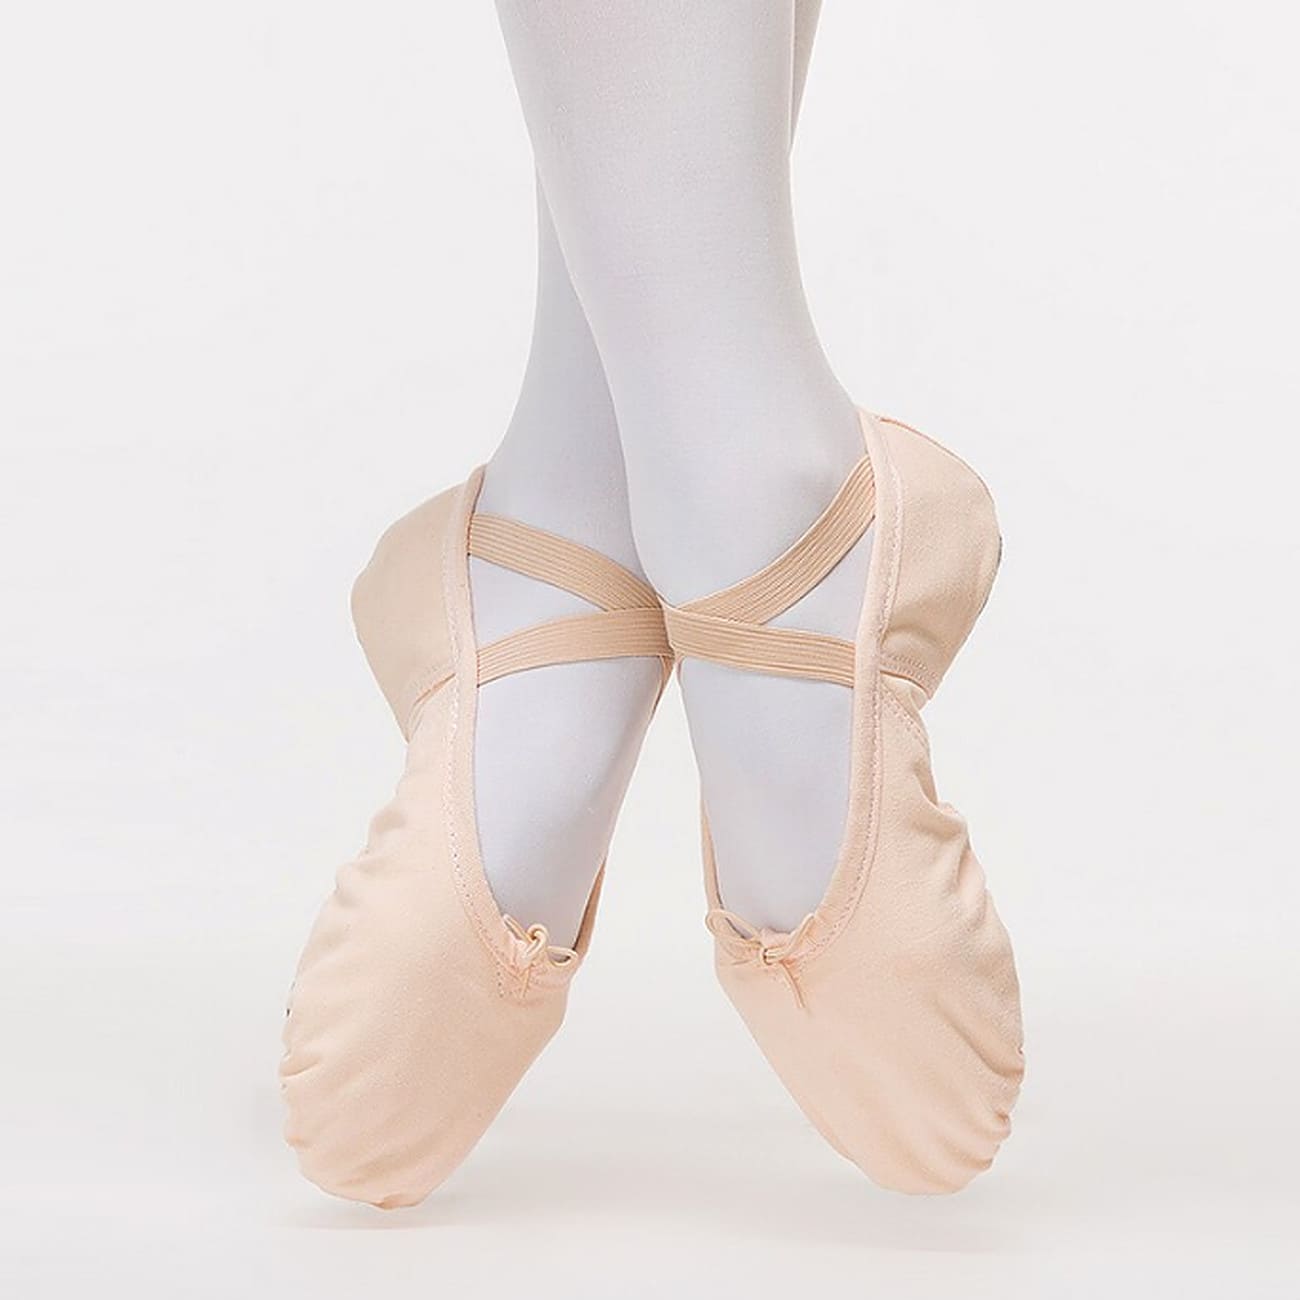 Sansha SILHOUETTE Soft Split Sole Ballet Shoes